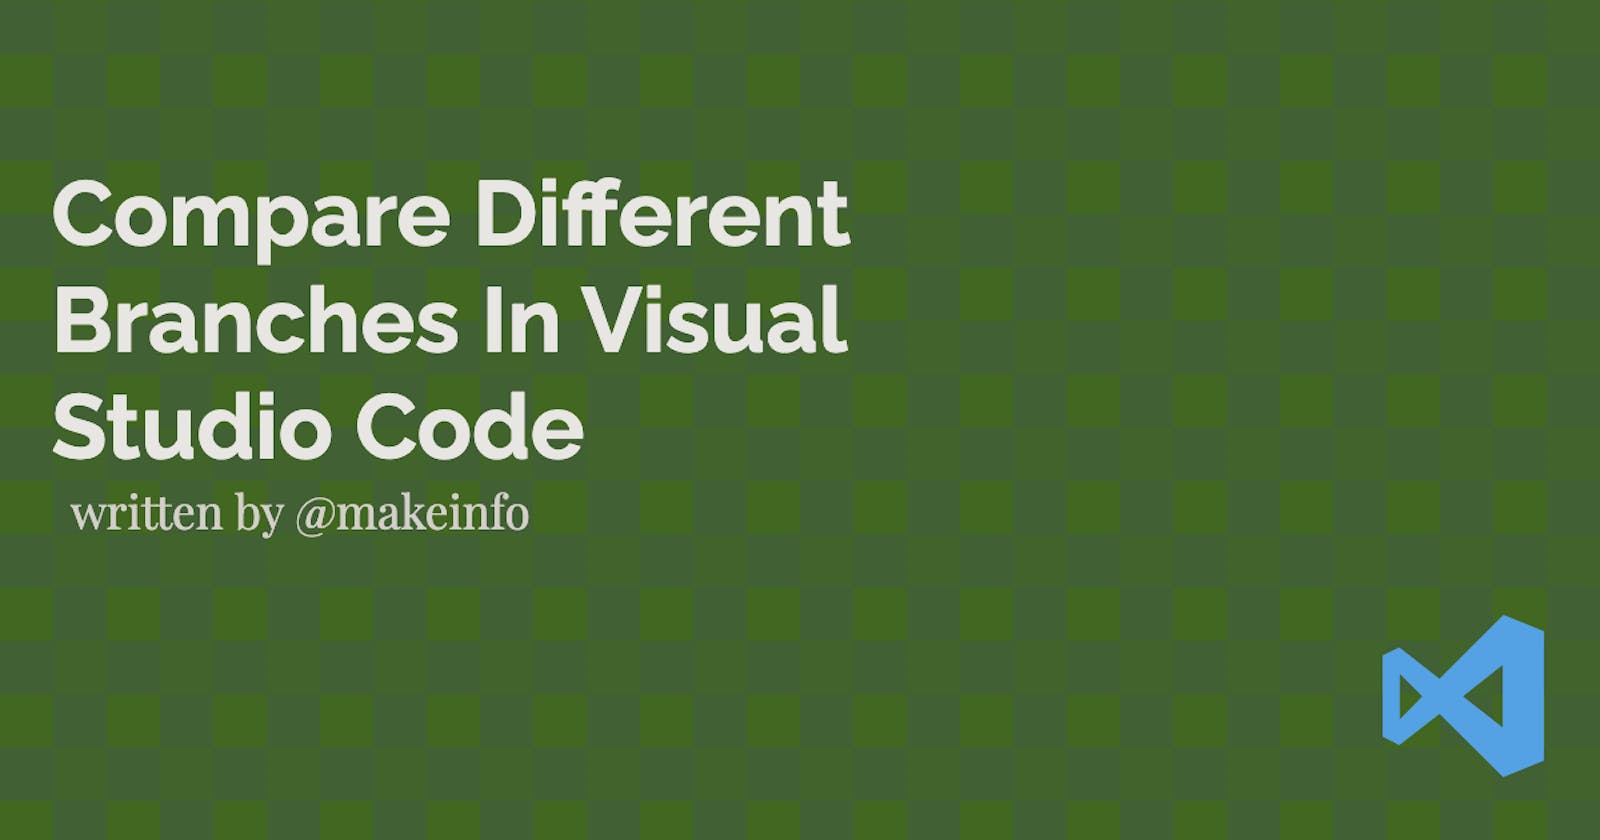 Compare Different Branches In Visual Studio Code